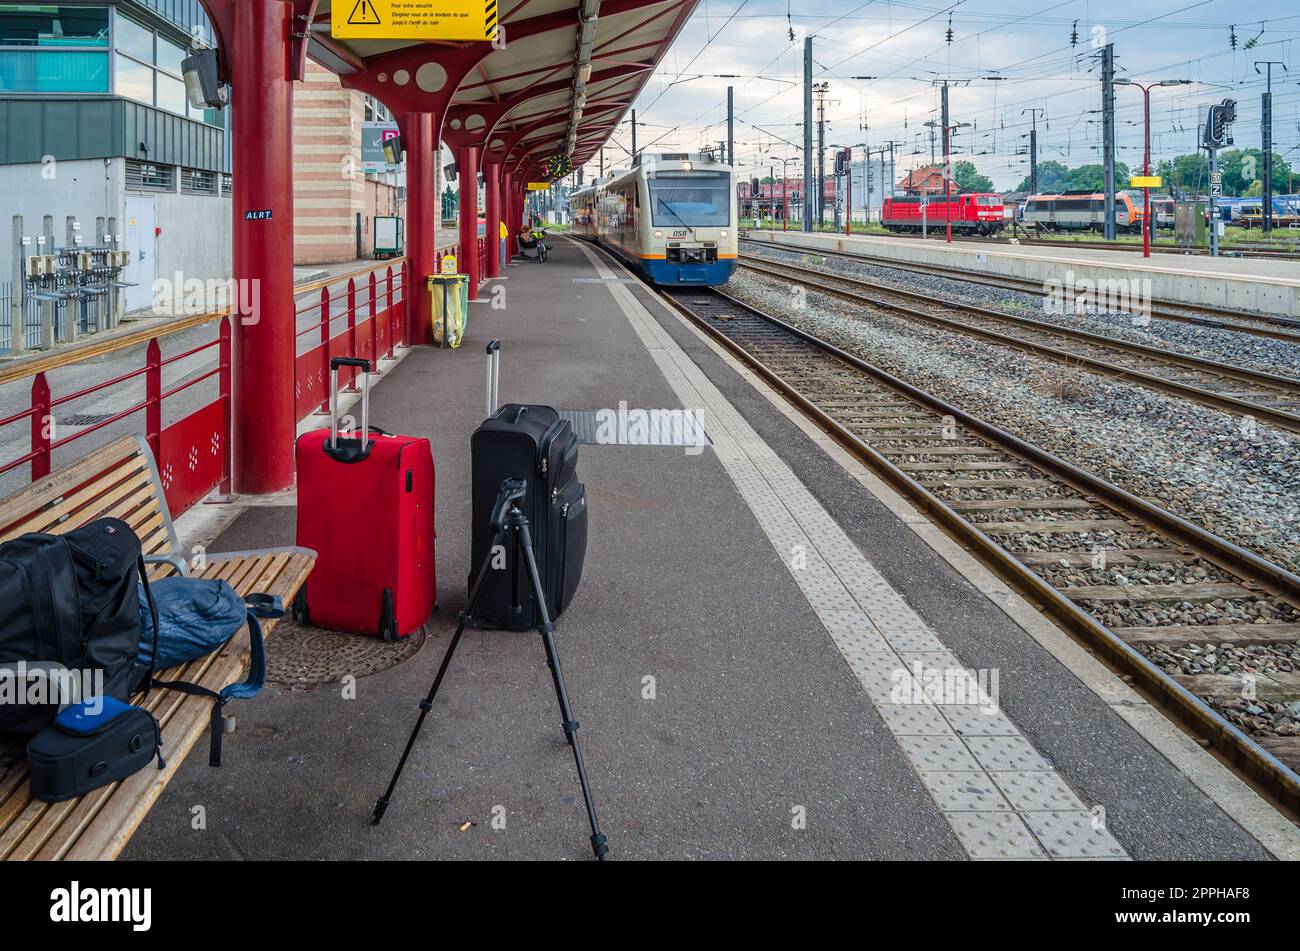 STRASSBURG, FRANKREICH - 29. AUGUST 2013: Bahnsteig mit Reisegepäck am Bahnhof Straßburg, Elsass, Frankreich Stockfoto